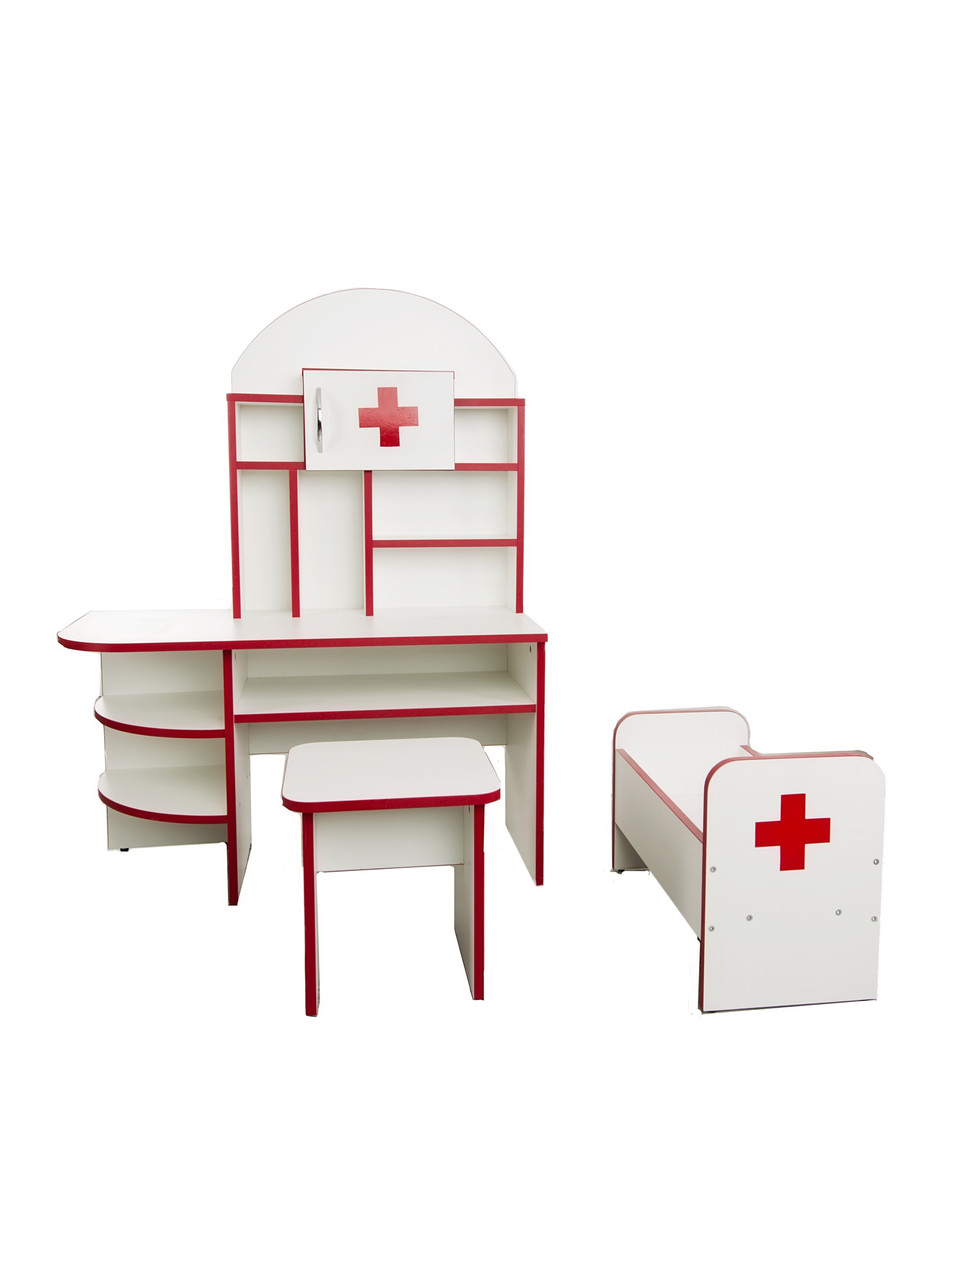 Игровая мебель "Больница" детская, фото 1